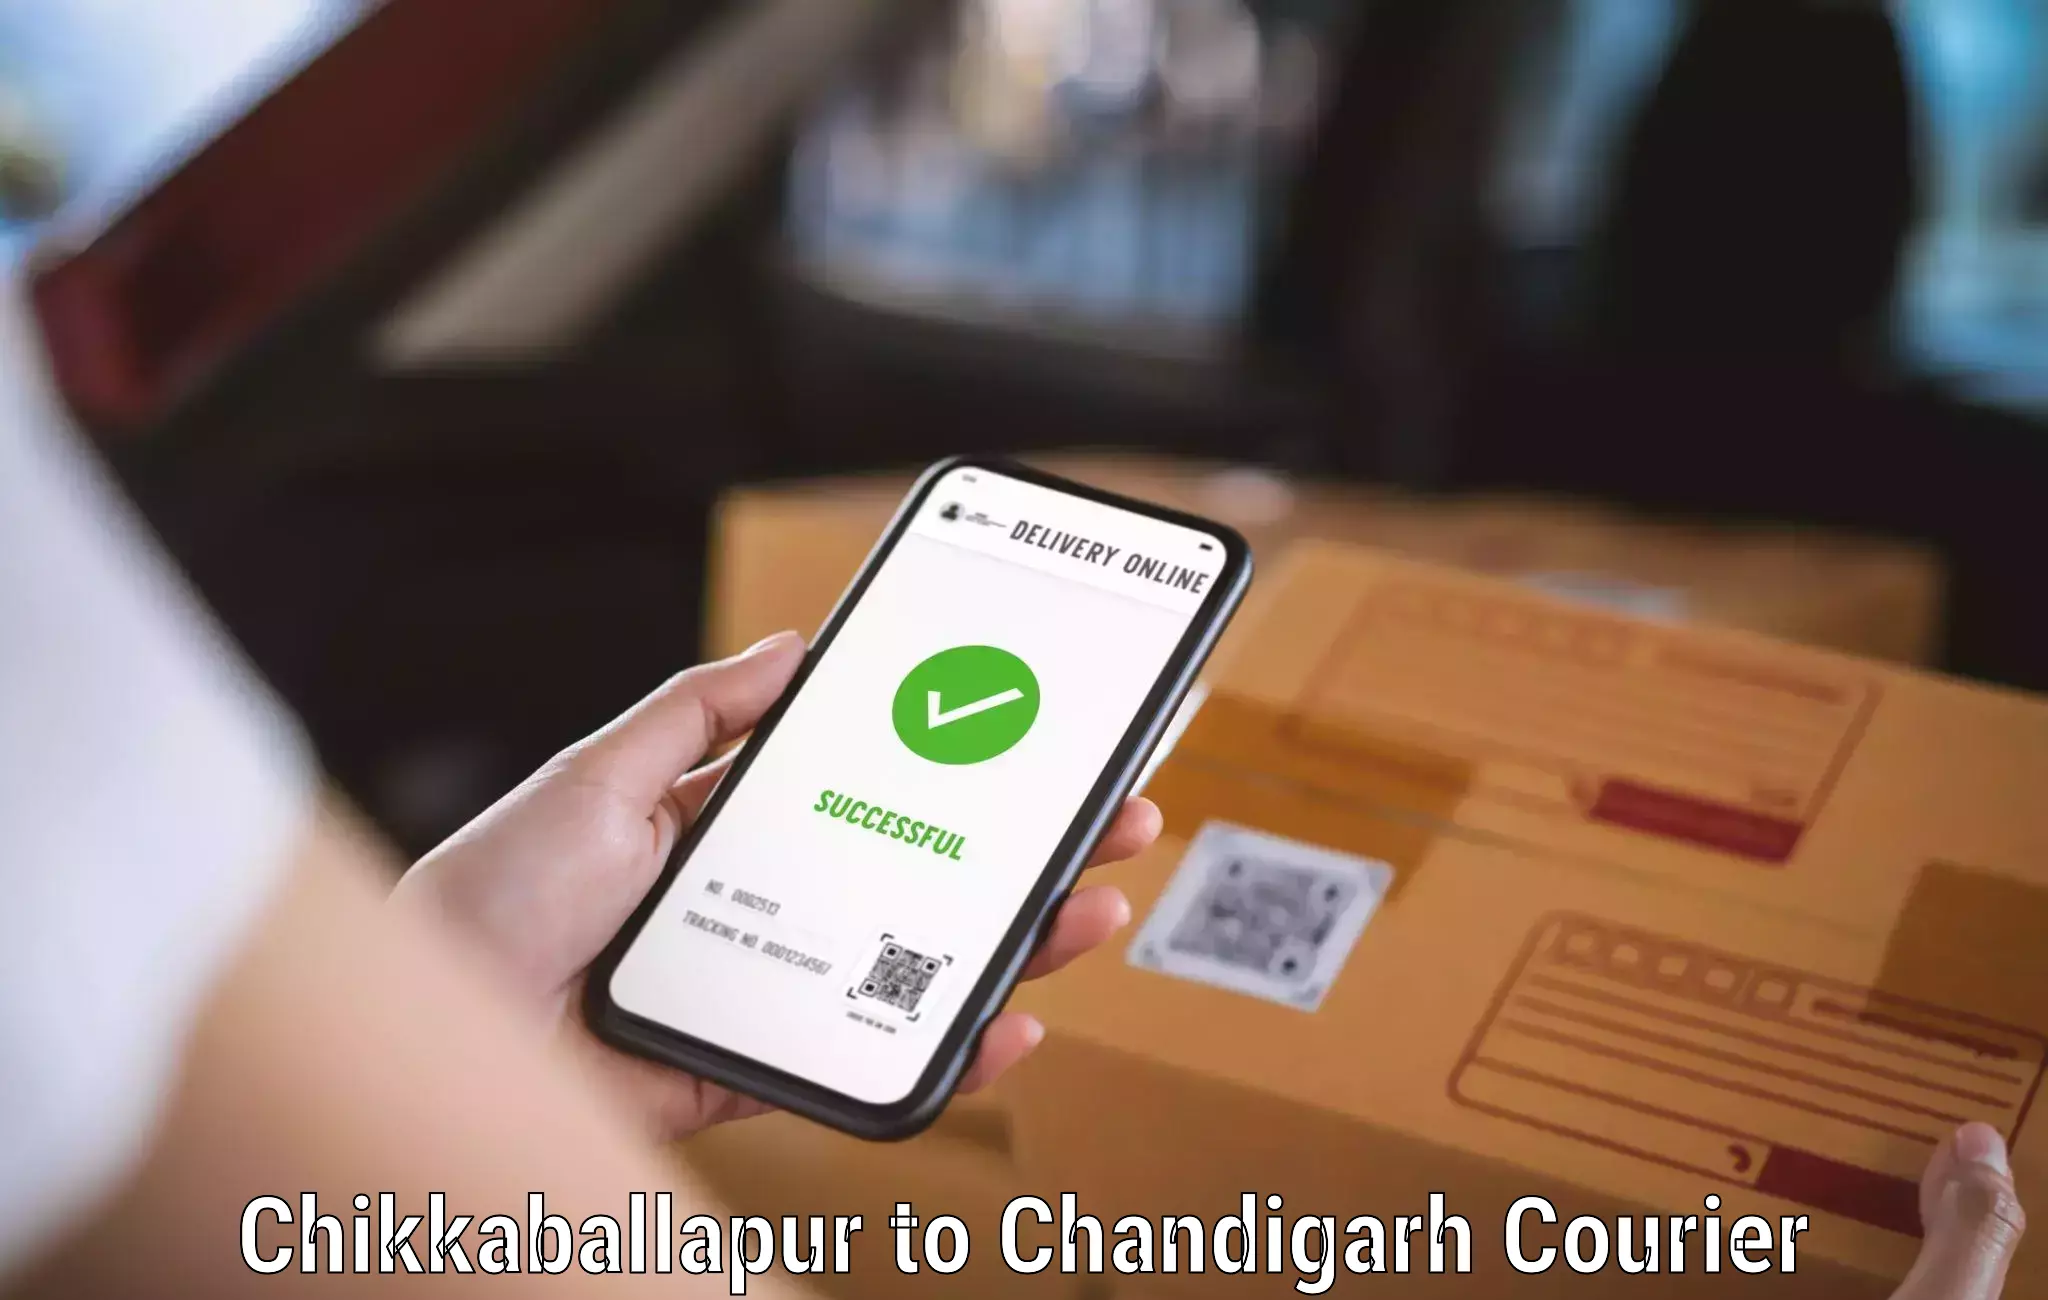 Customer-centric shipping Chikkaballapur to Chandigarh